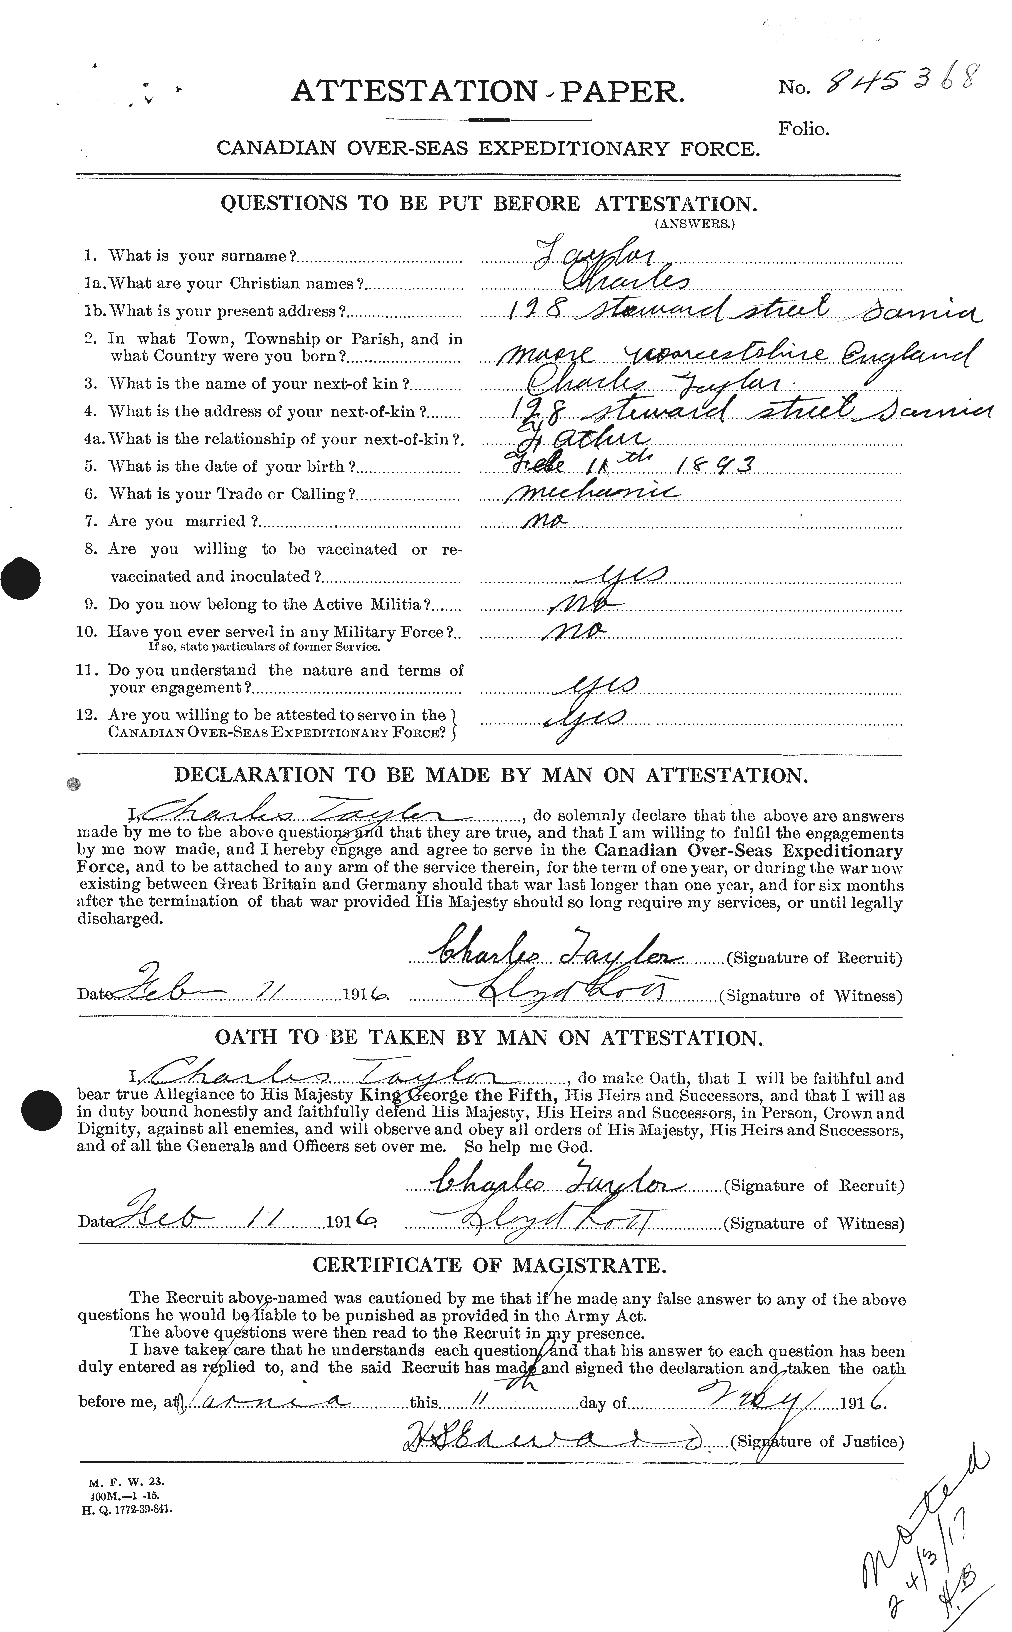 Dossiers du Personnel de la Première Guerre mondiale - CEC 626823a